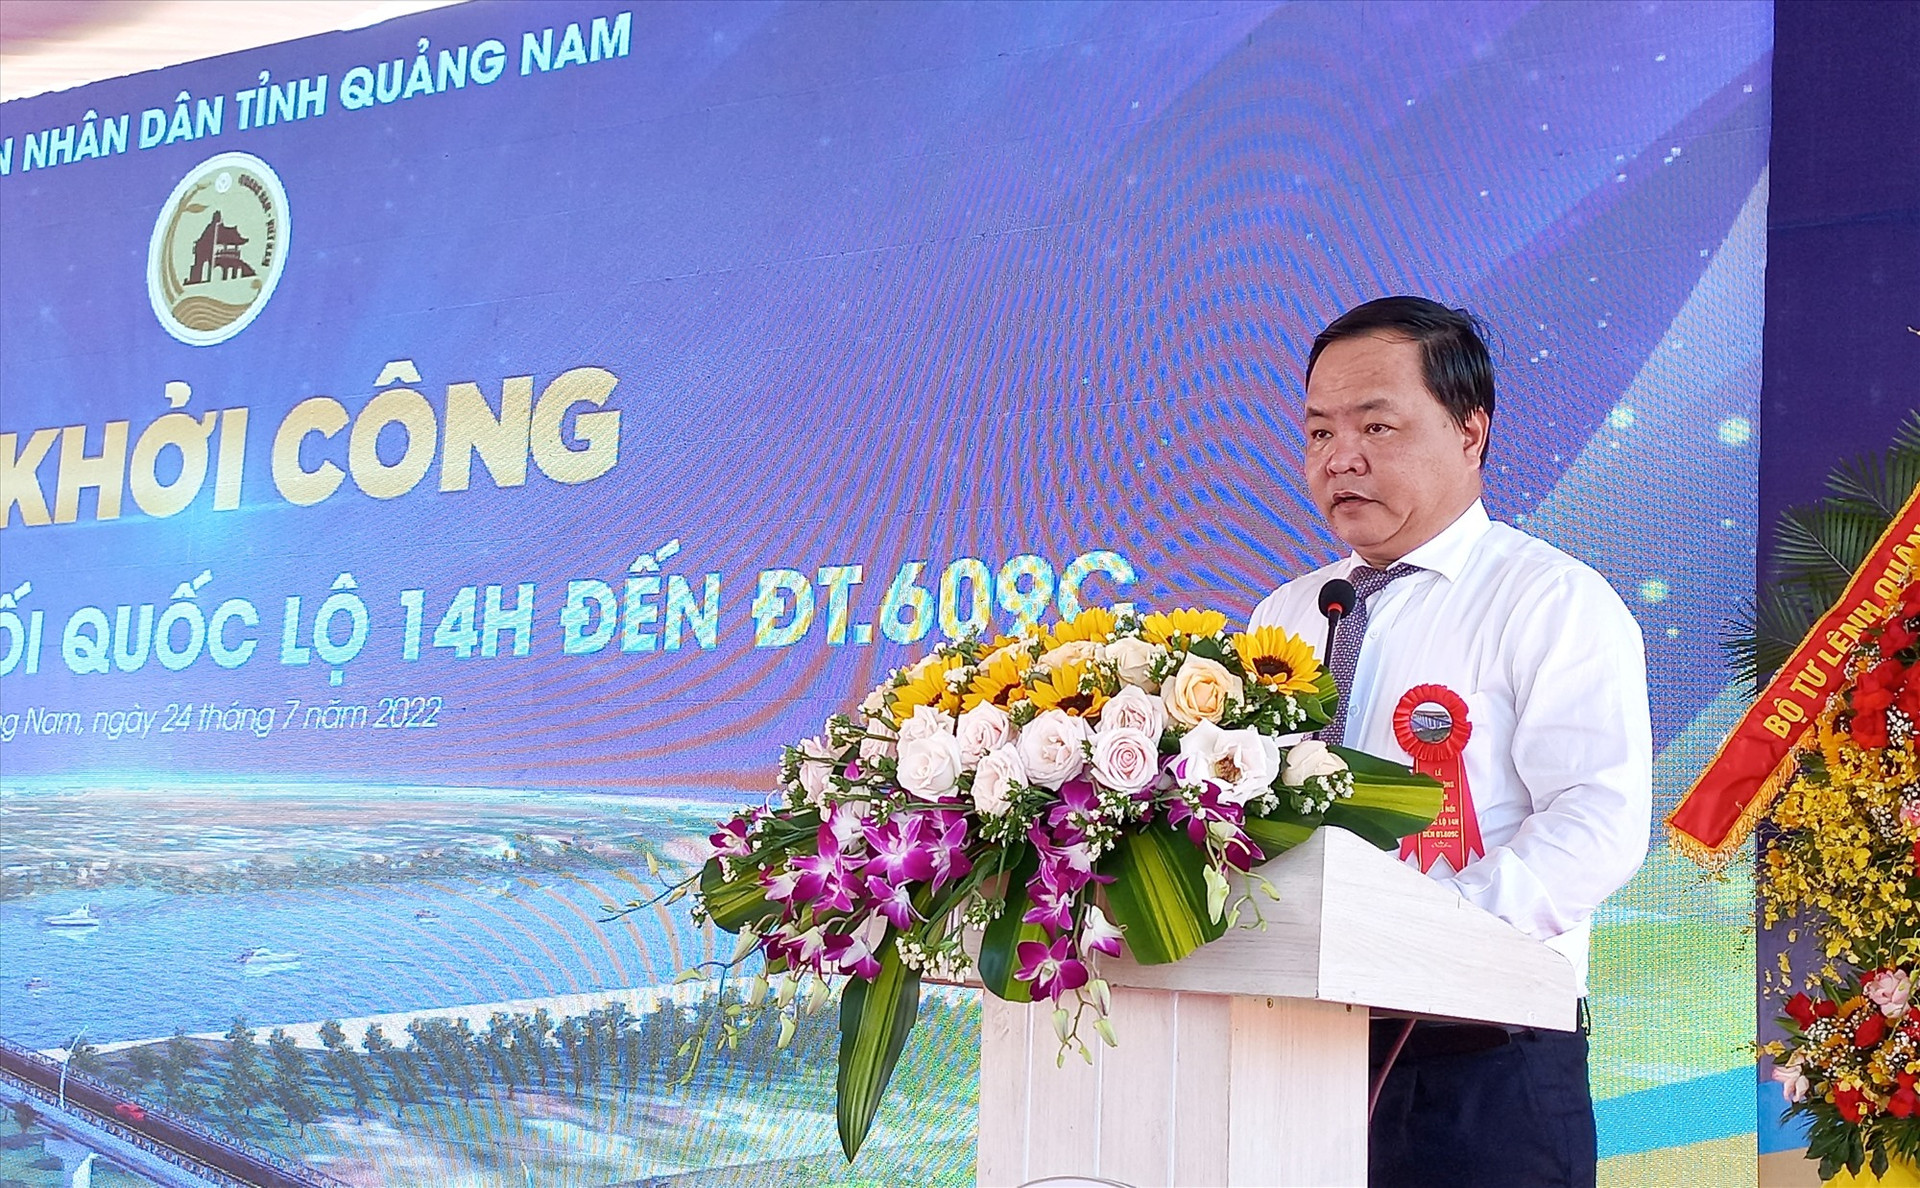 Phó Chủ tịch UBND tỉnh Nguyễn Hồng Quang đề nghị các bên liên quan triển khai dự án đúng tiến độ, đảm bảo chất lượng, mỹ thuật. Ảnh: CT